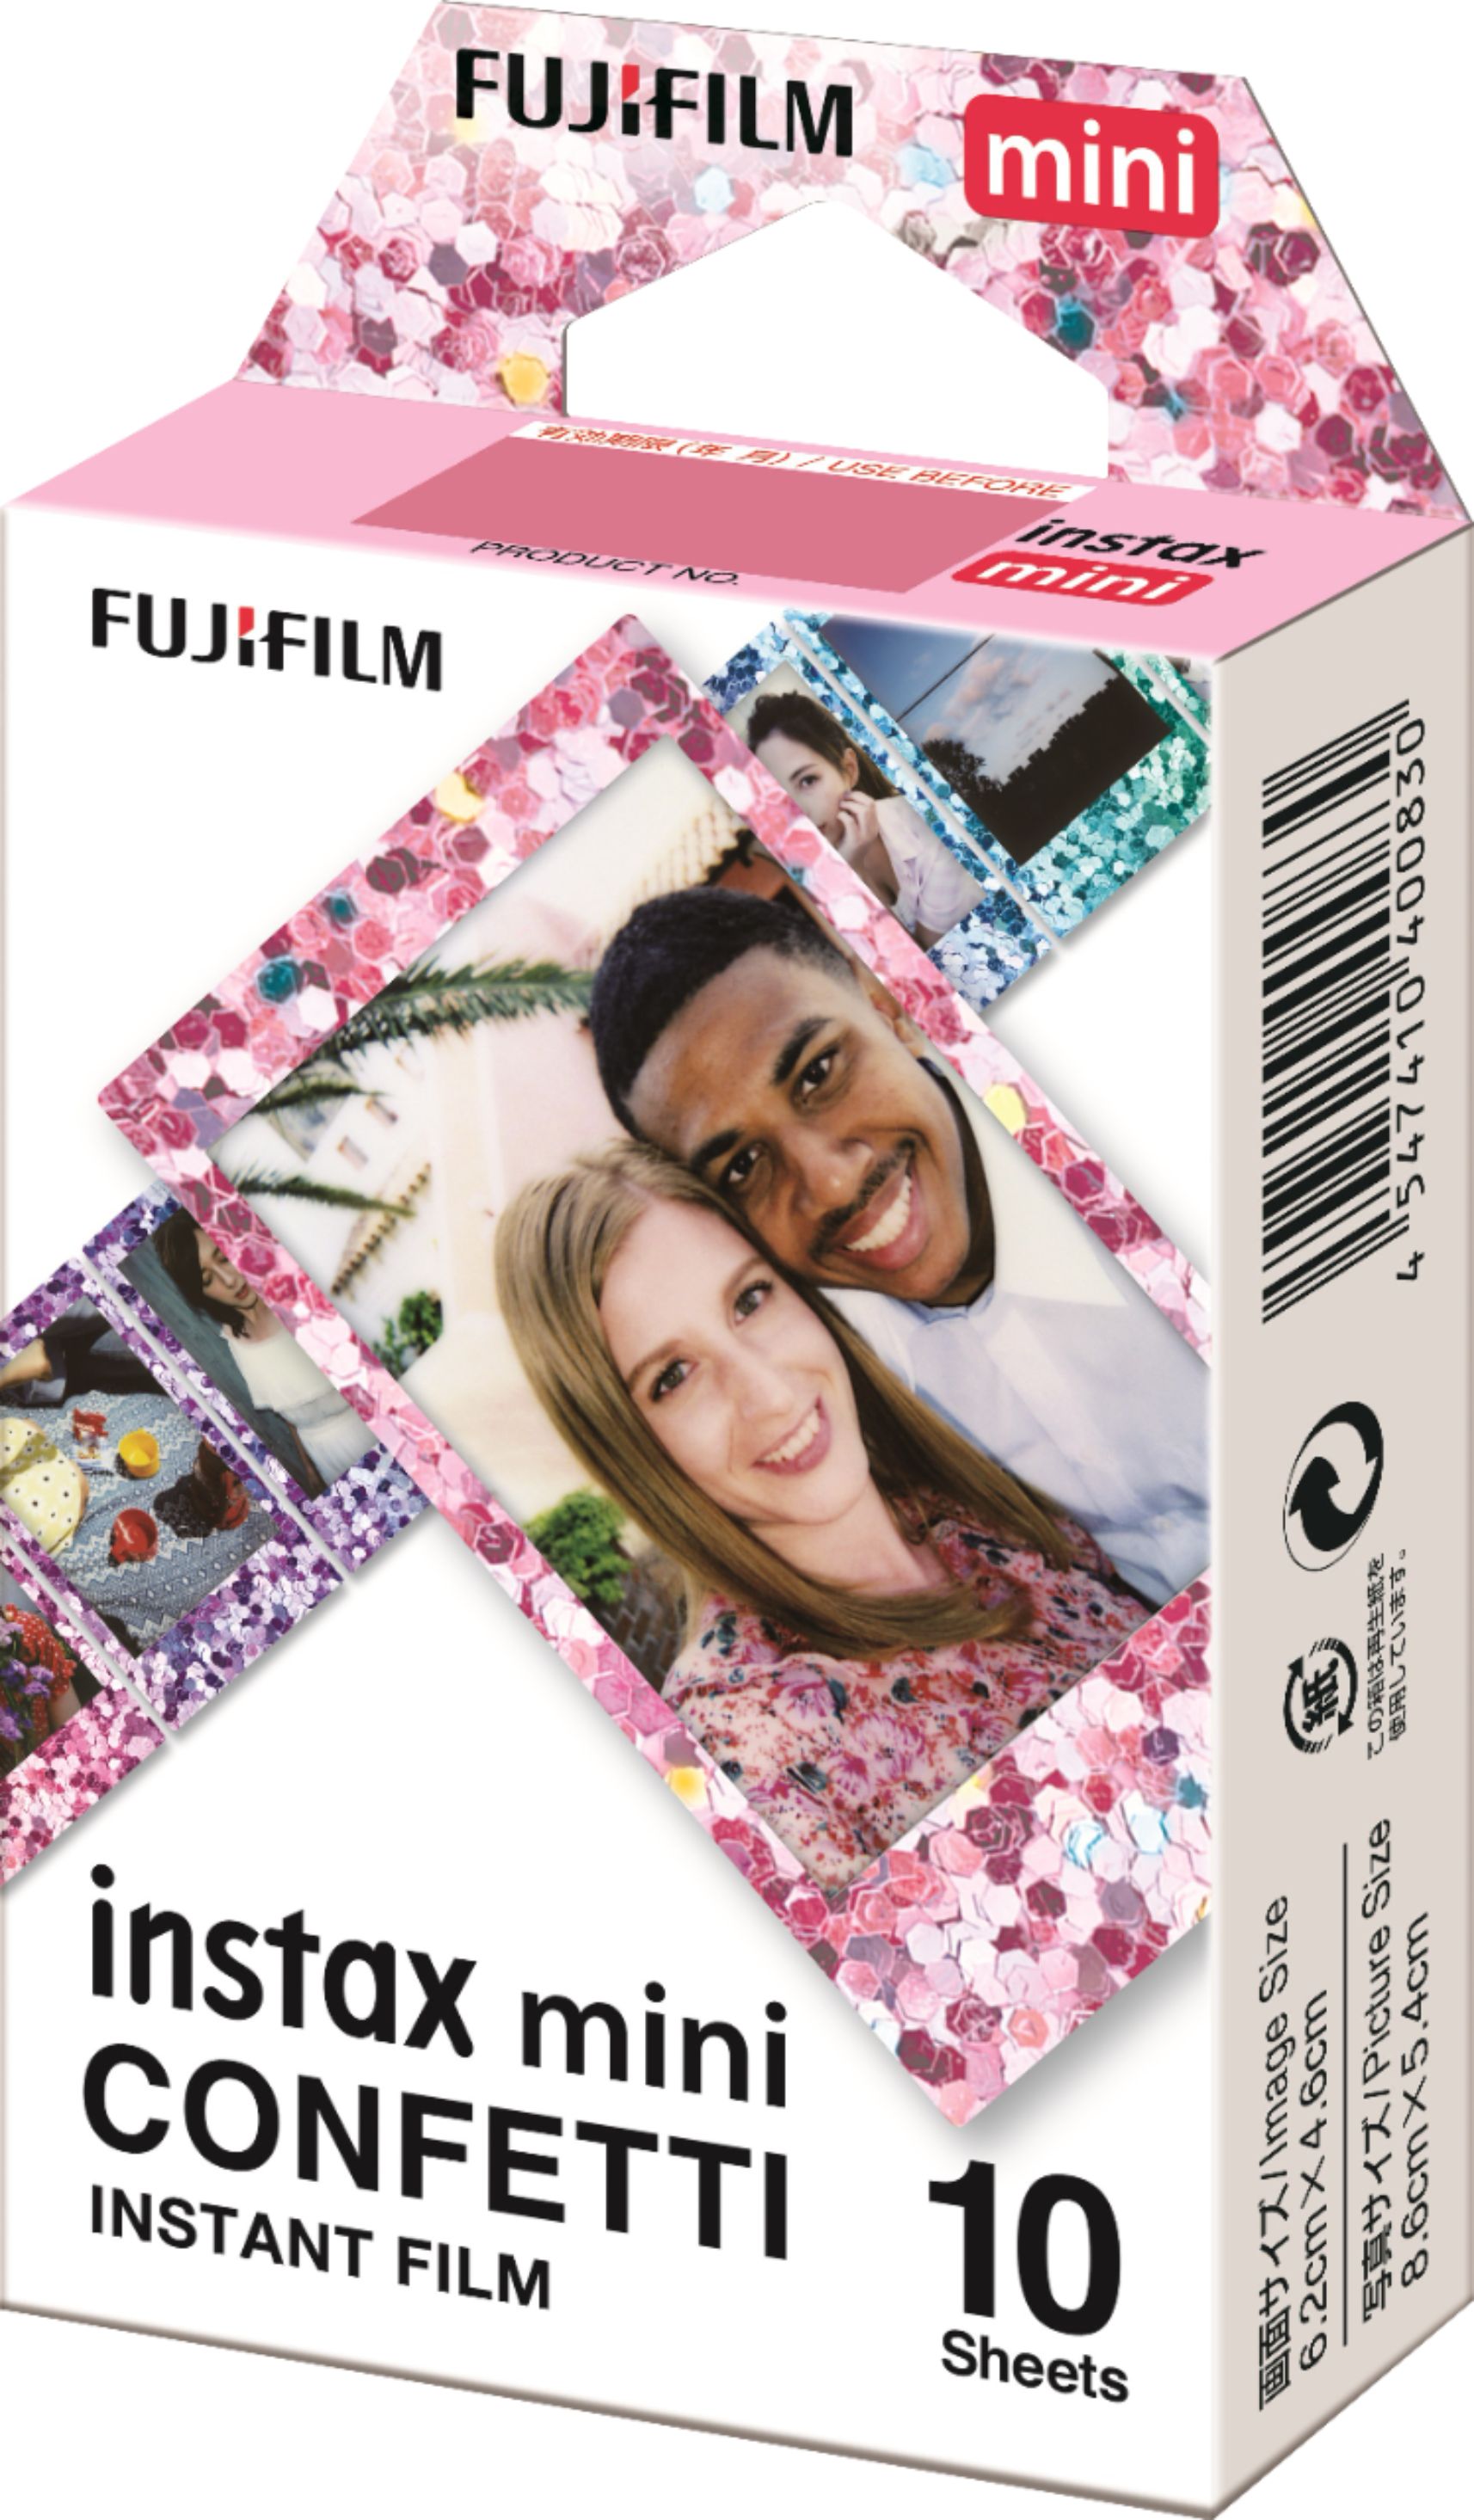 Left View: Fujifilm - INSTAX MINI Confetti Instant Film